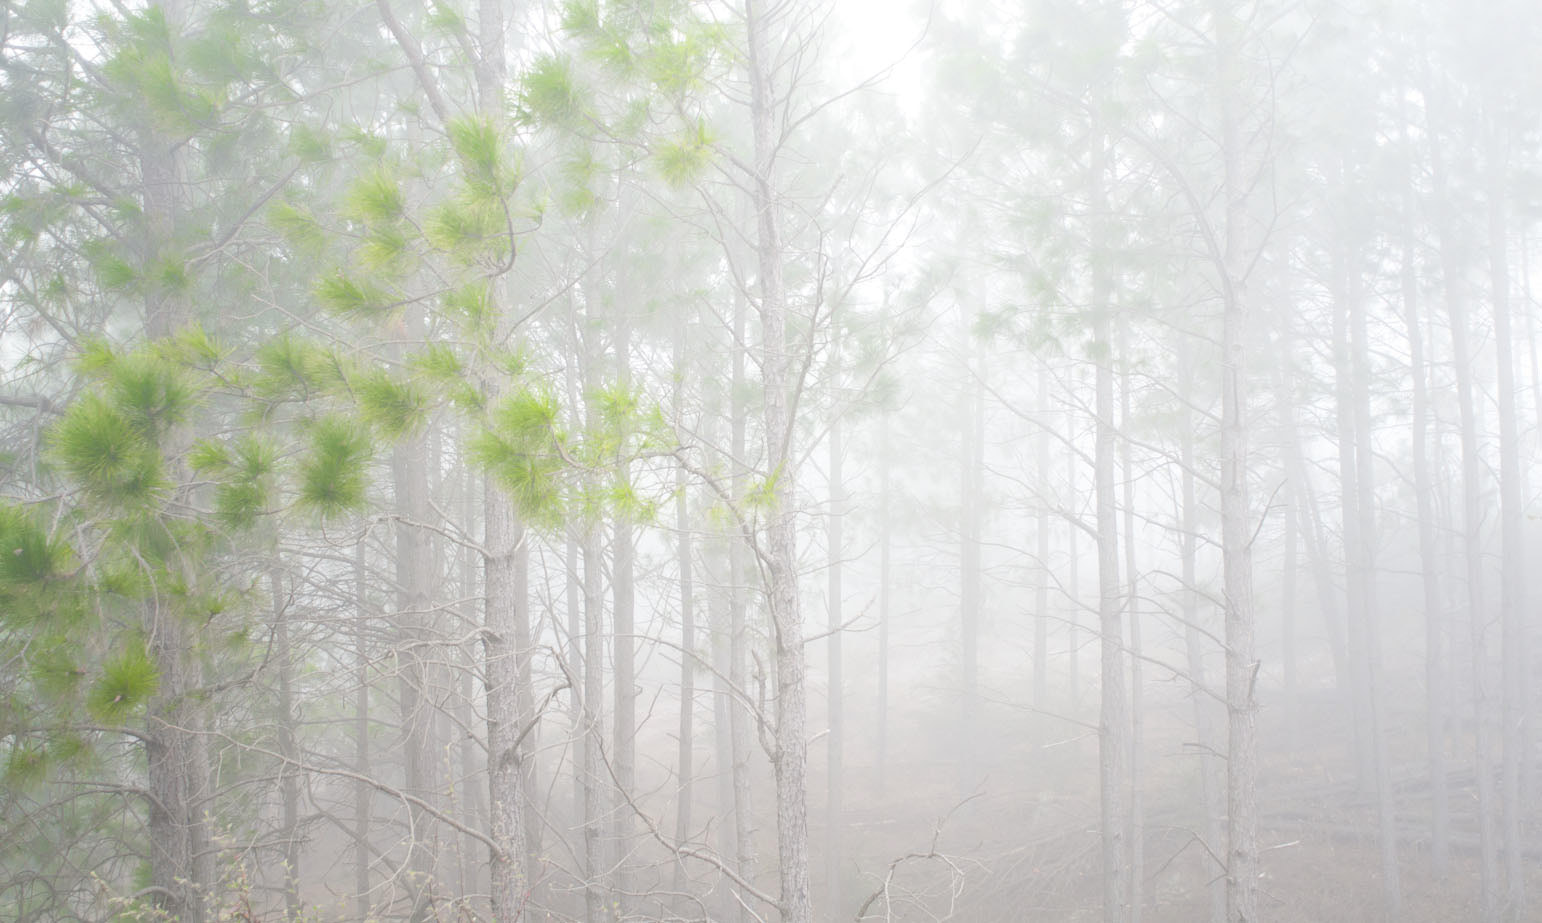 Nikon D90 + AF Nikkor 24mm f/2.8 sample photo. Niebla de bosque. córdoba, argentina photography